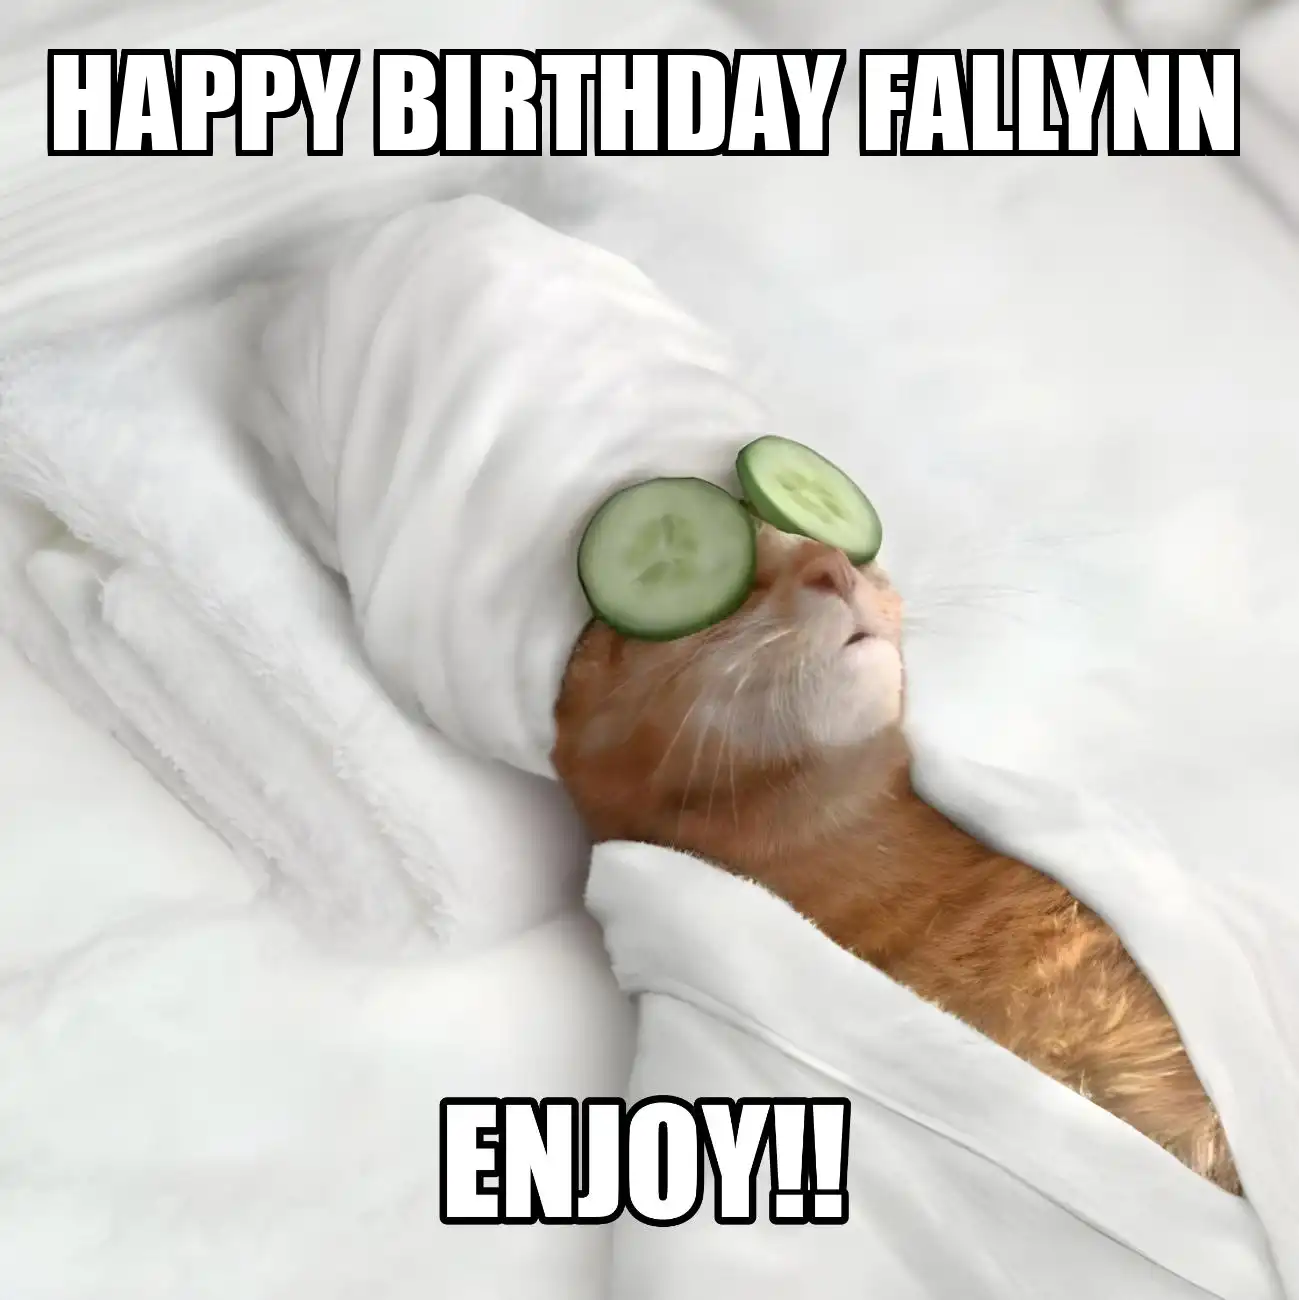 Happy Birthday Fallynn Enjoy Cat Meme